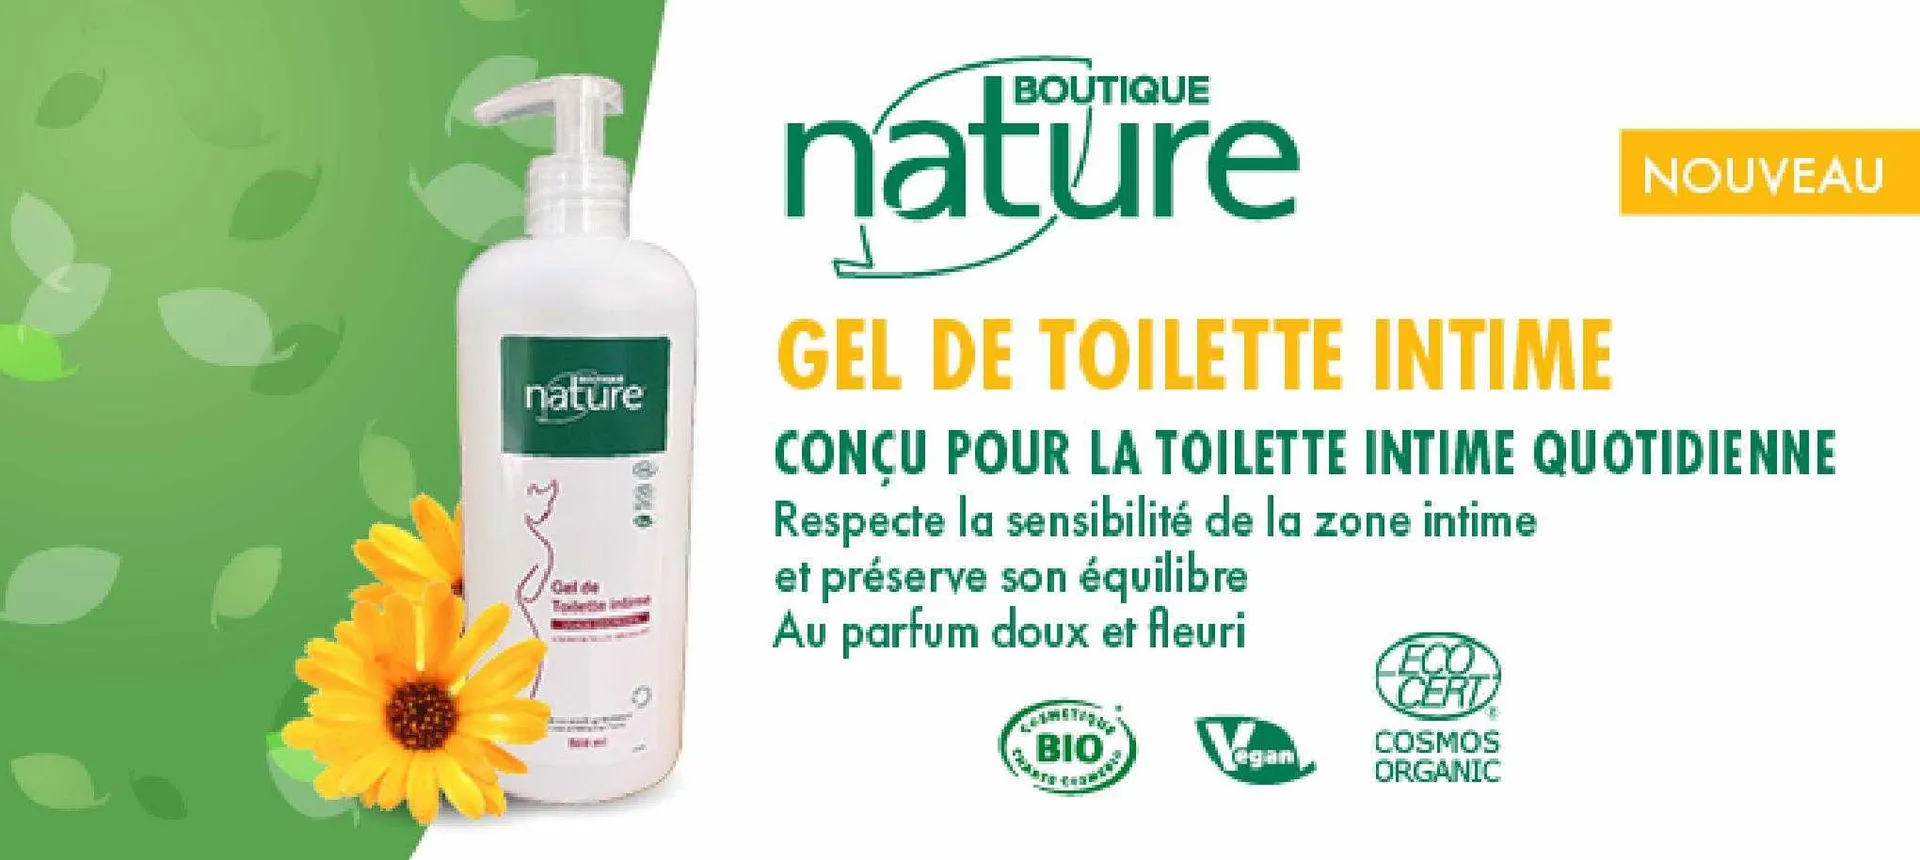 Catalogue Boutique Nature - 3